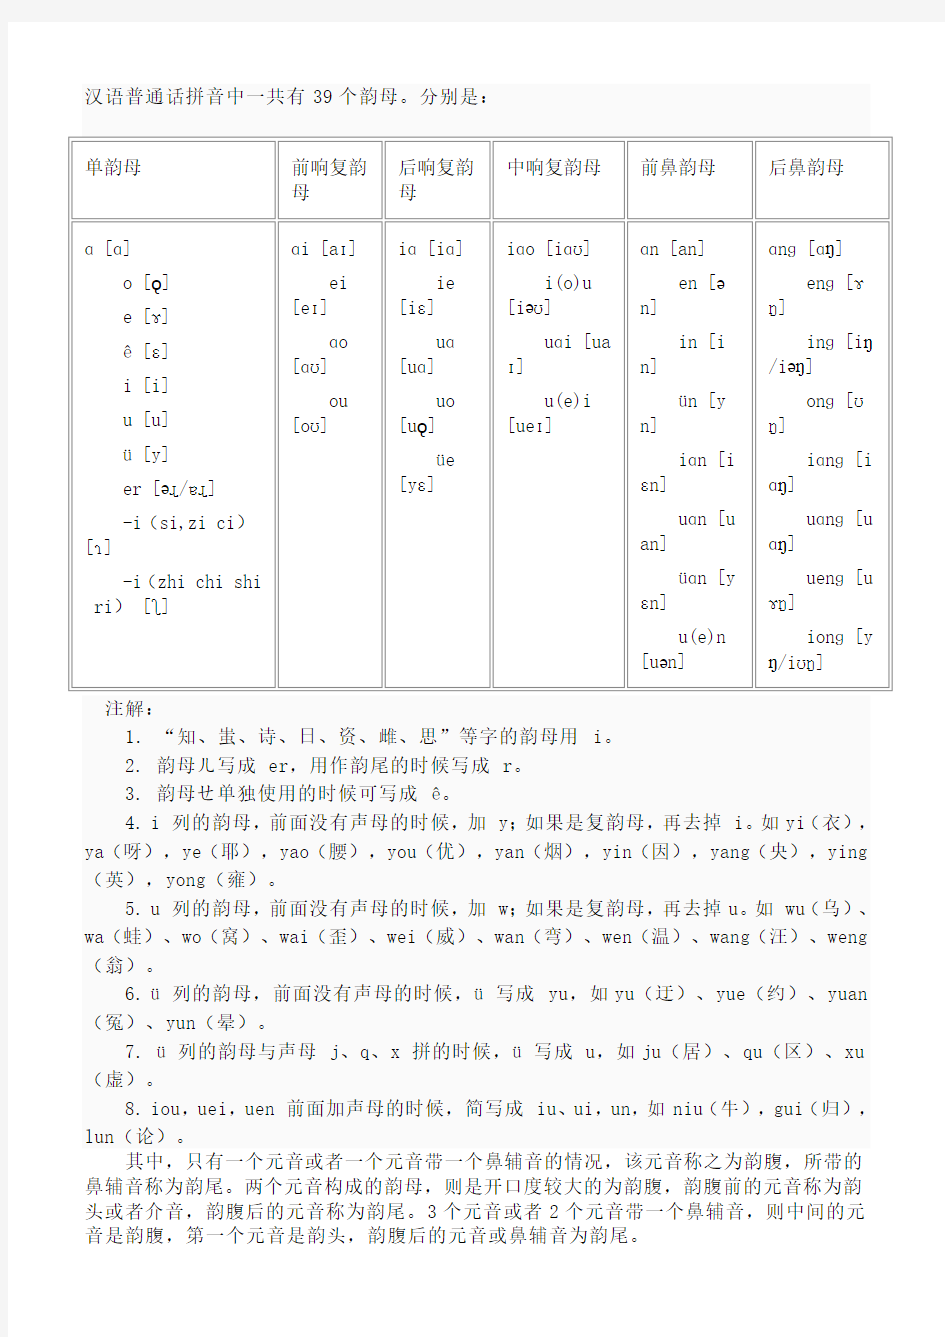 汉语普通话拼音中一共有39个韵母